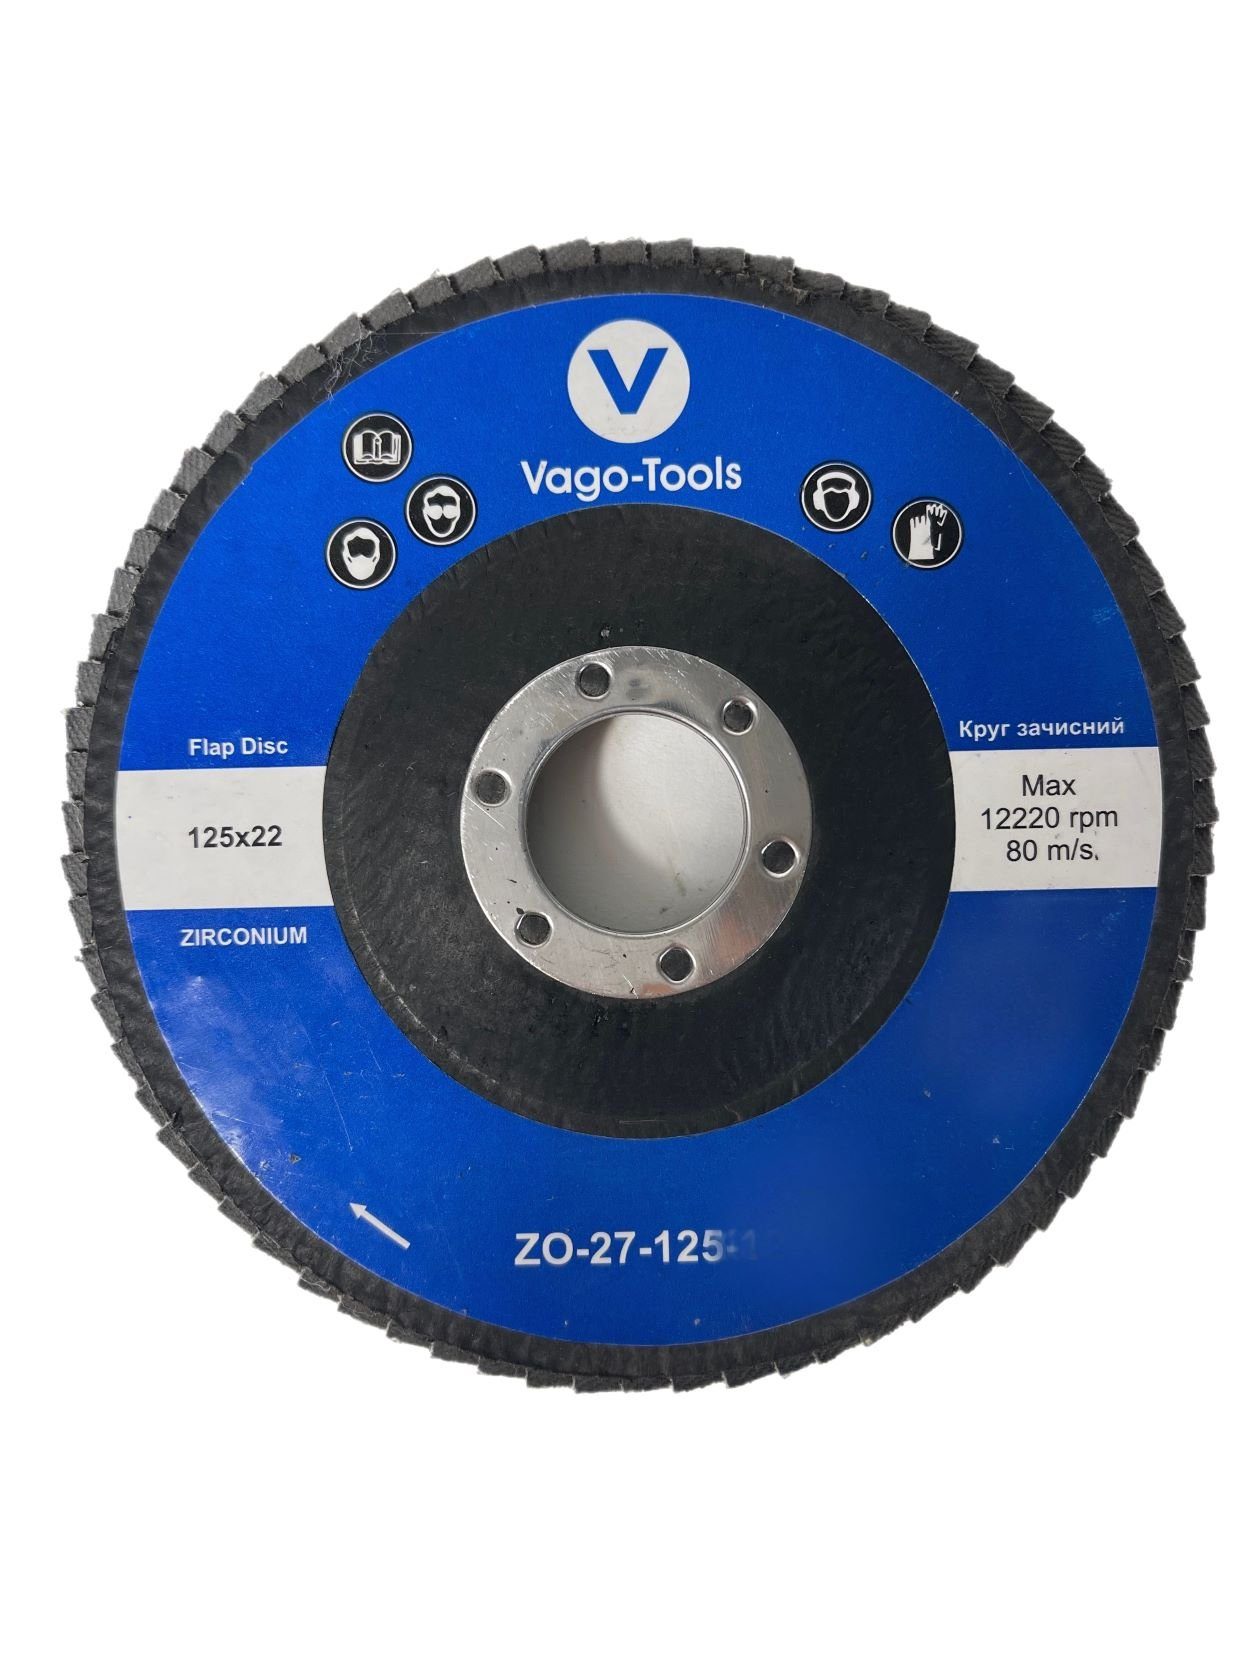 VaGo-Tools Schleifscheibe Fächerschleifscheiben 125mm P80 flach Blau 50x, (Packung)